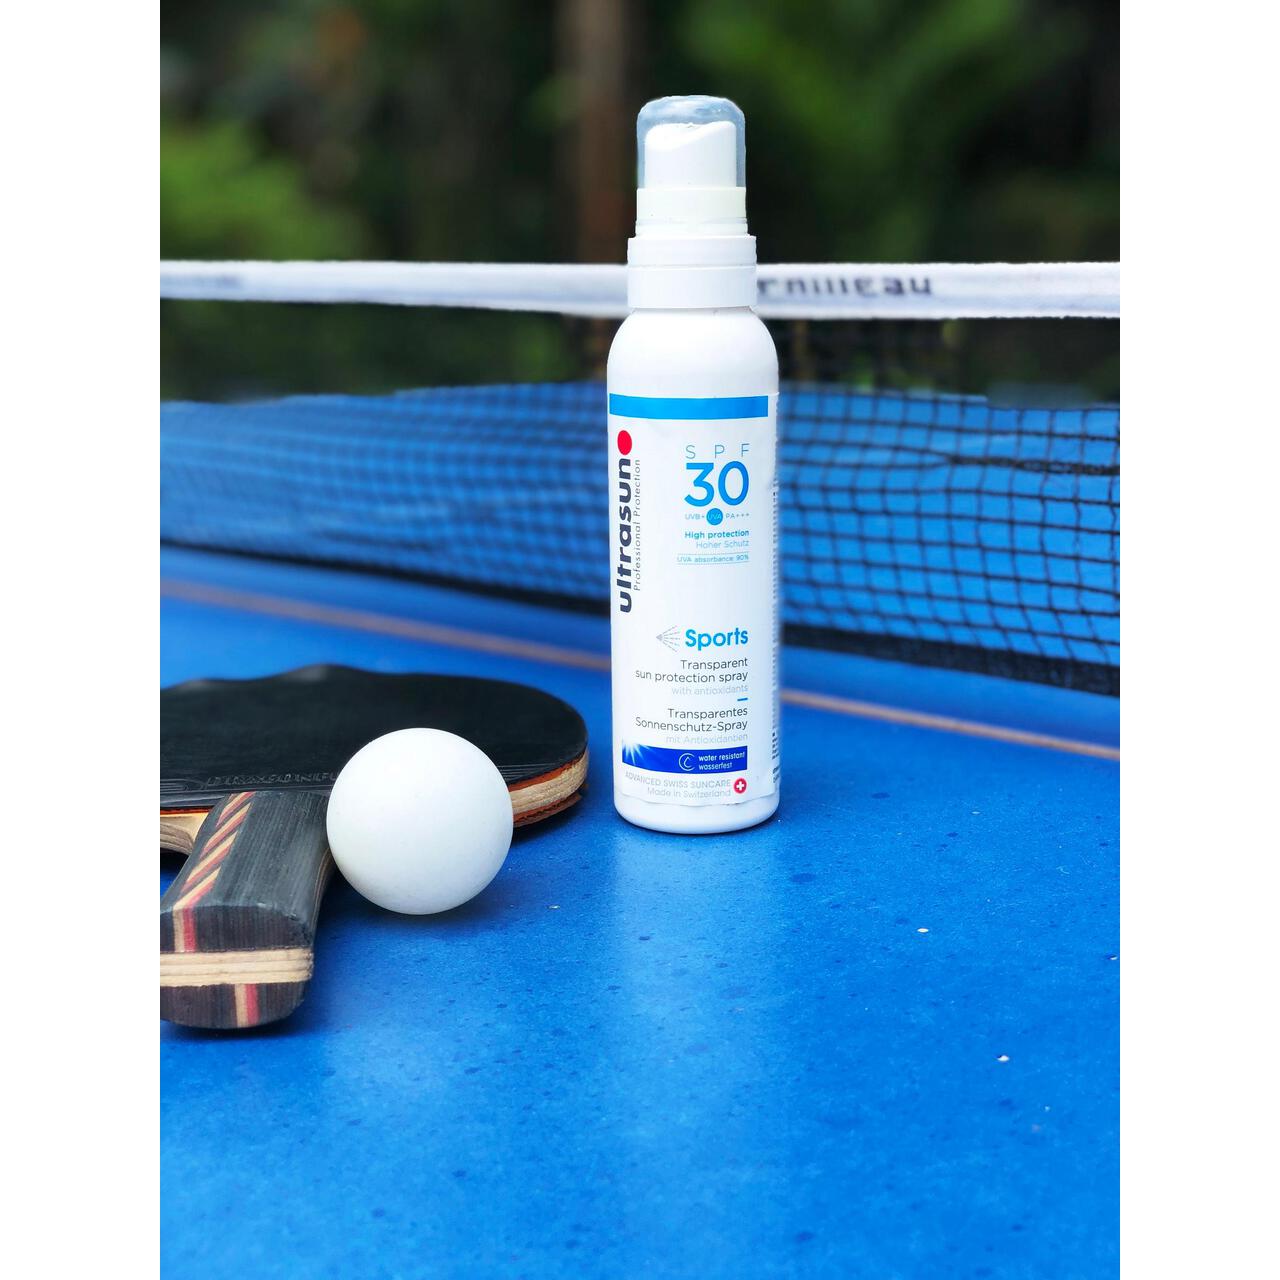 Ultrasun SPF 30 Sports Spray Sunscreen 150ml